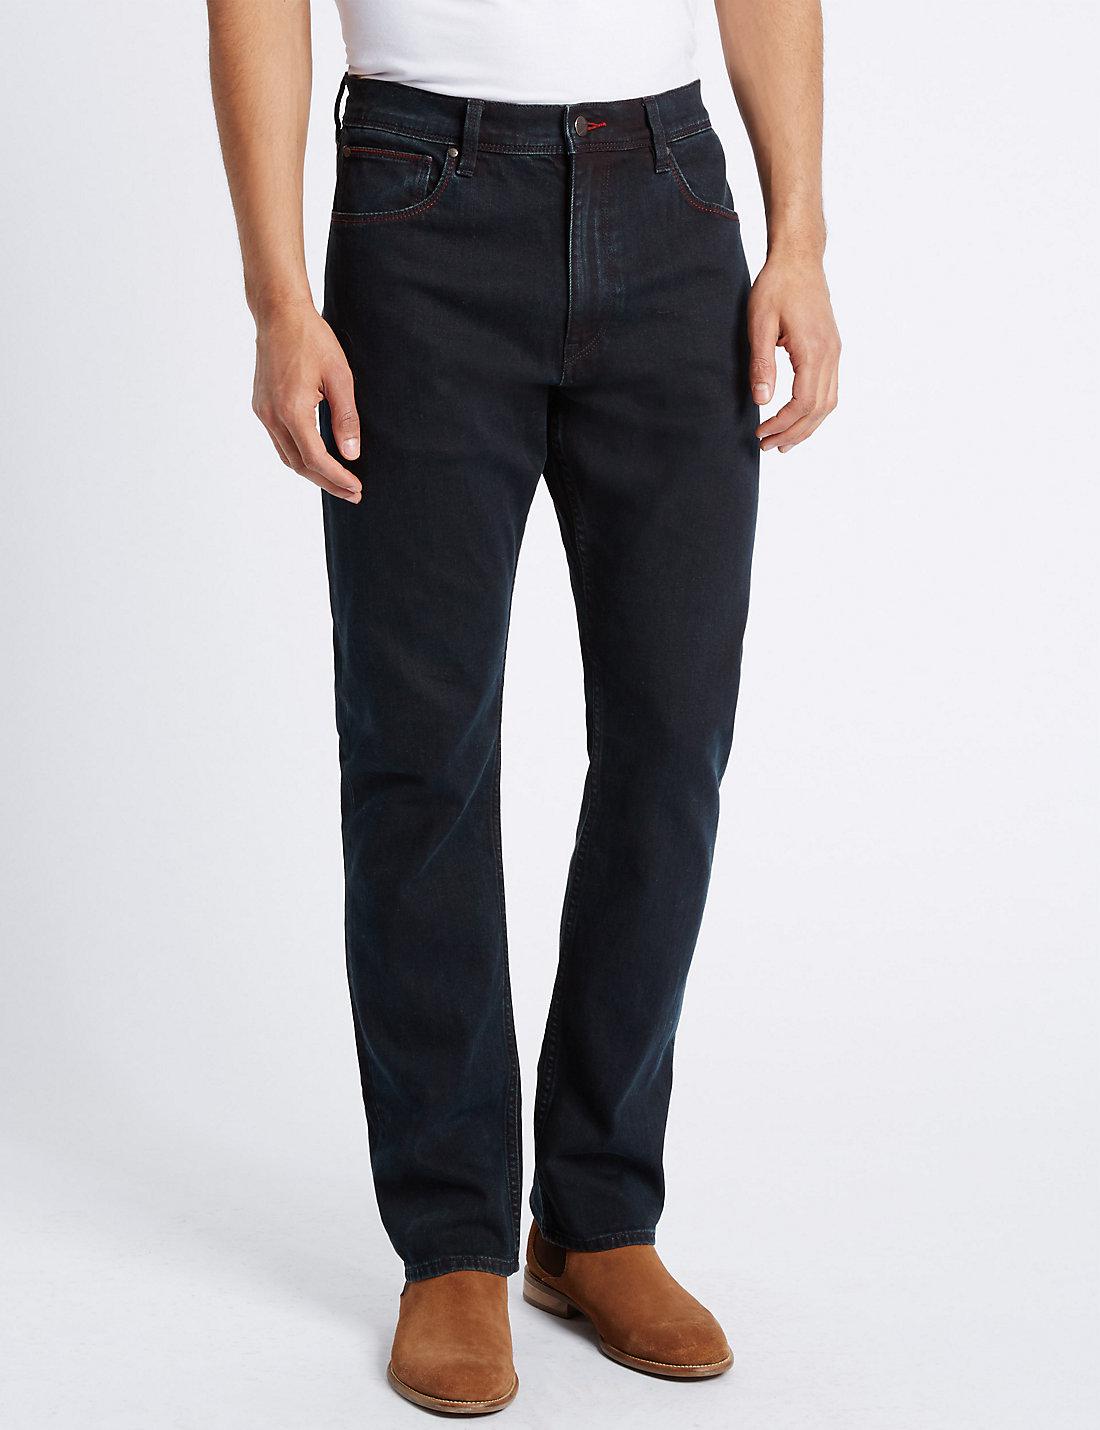 Lyst - Marks & Spencer Regular Fit Stretch Jeans in Blue for Men